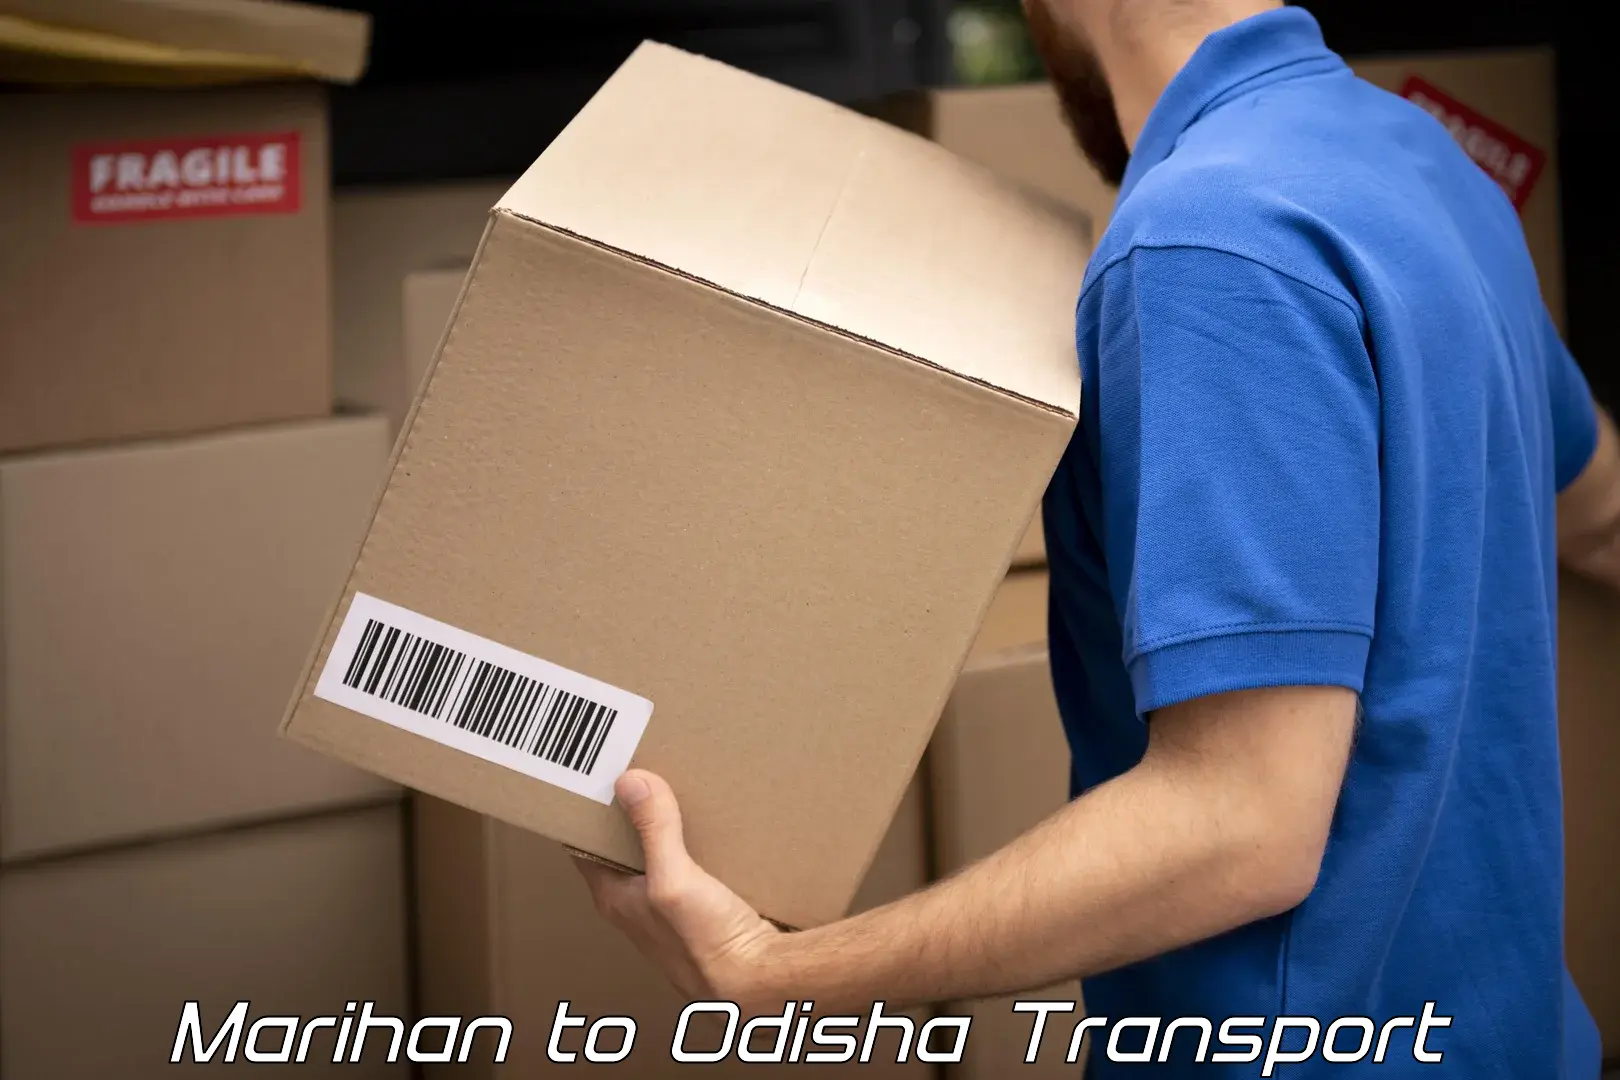 Pick up transport service Marihan to Ganjam